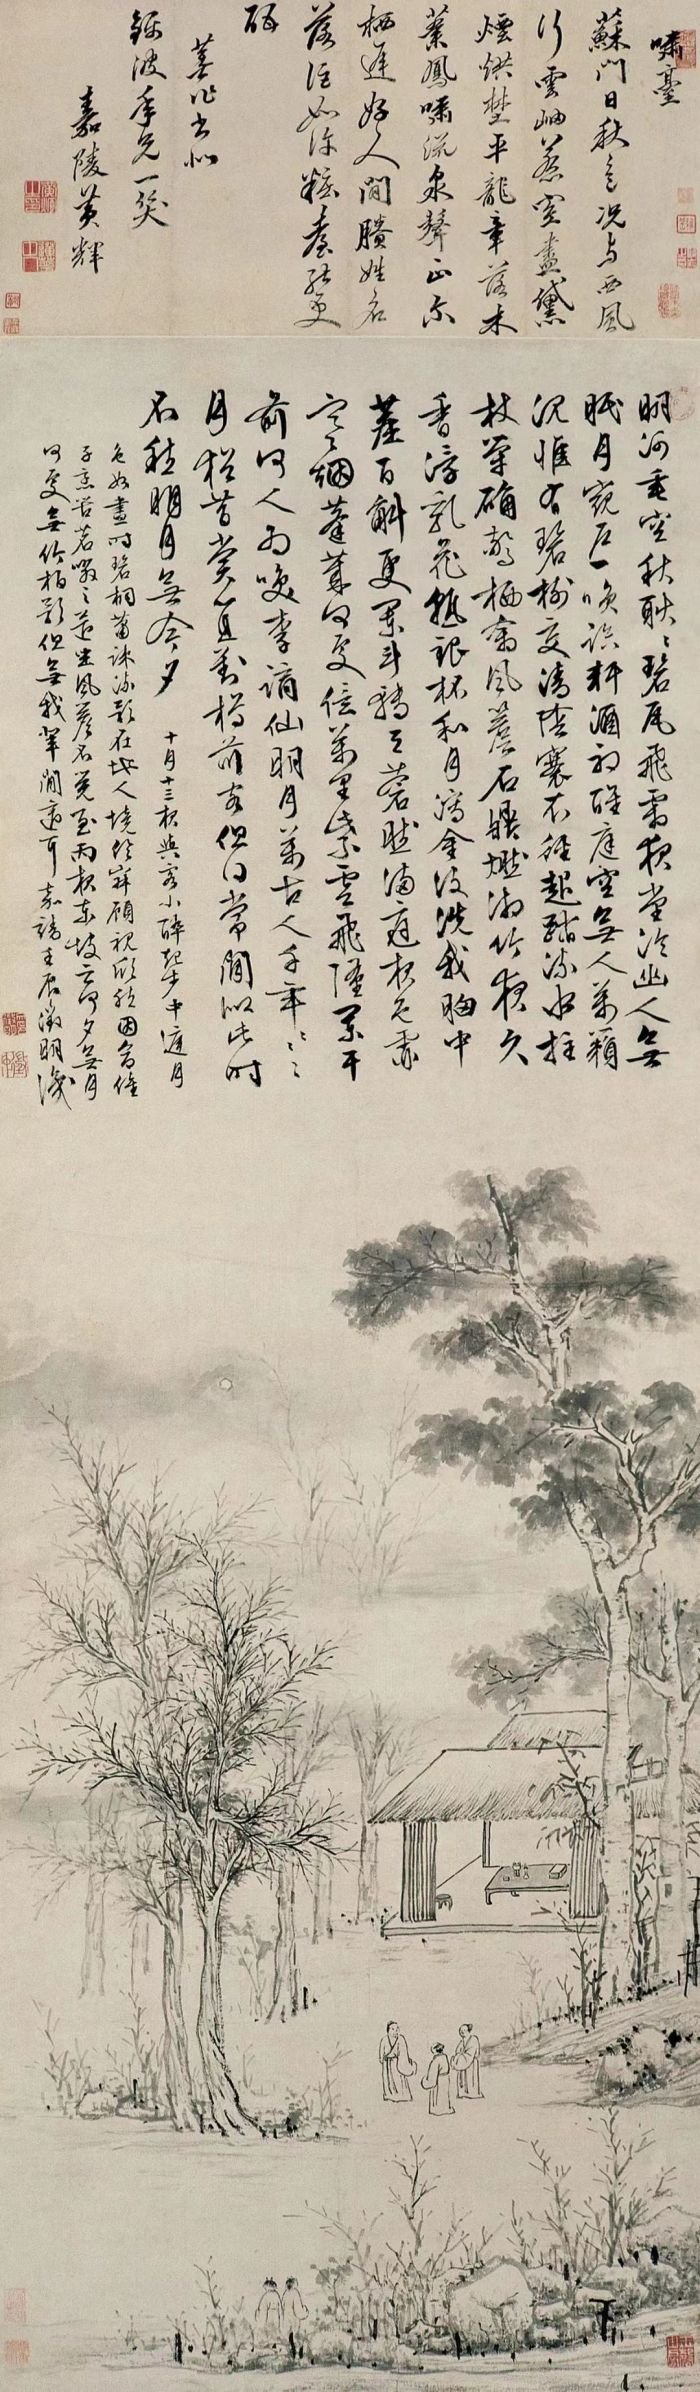 文徵明 《中庭步月图》南京博物馆藏